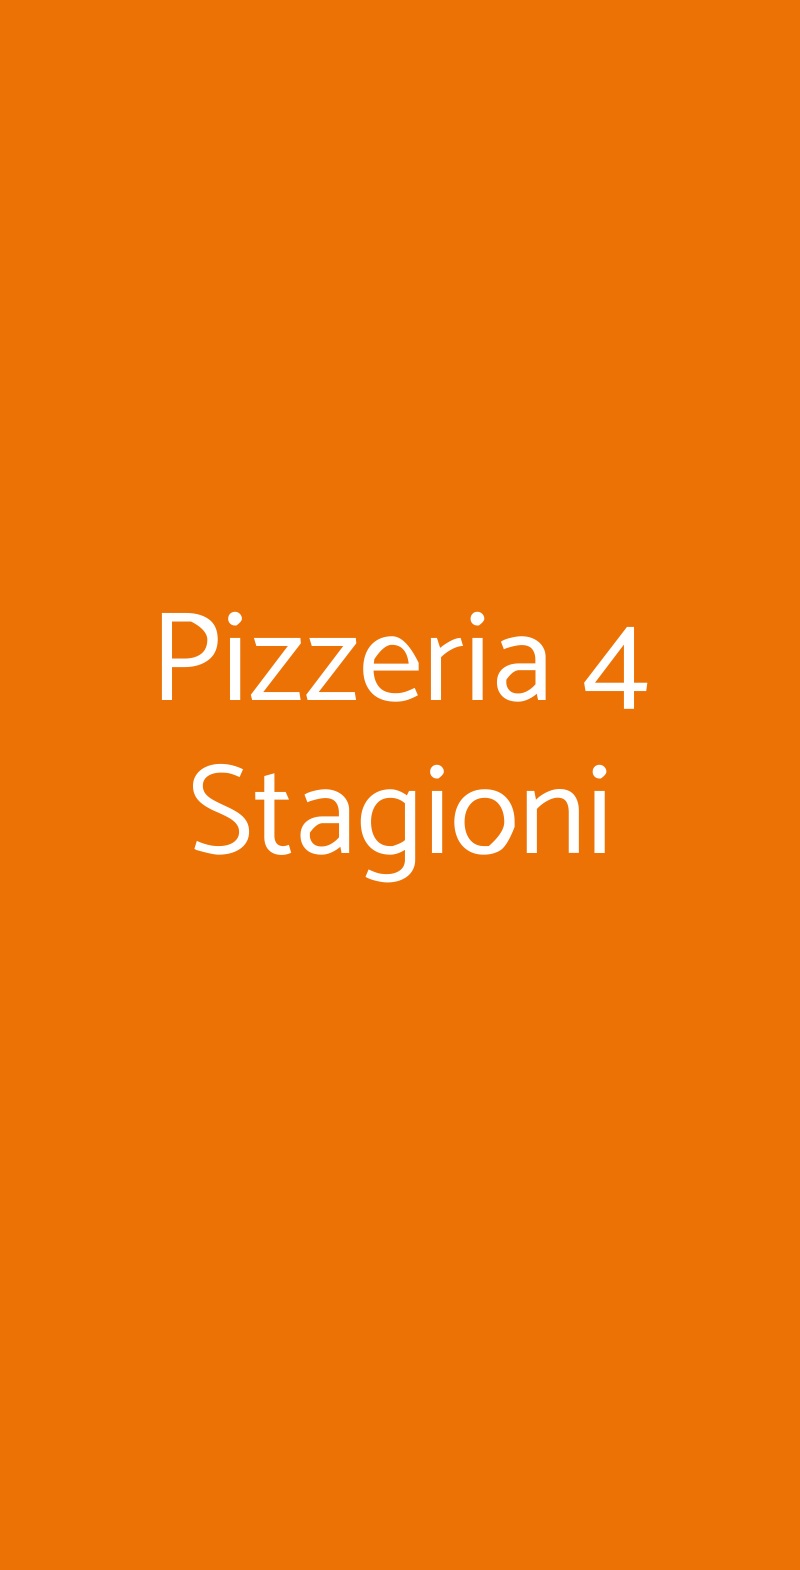 Pizzeria 4 Stagioni Milano menù 1 pagina